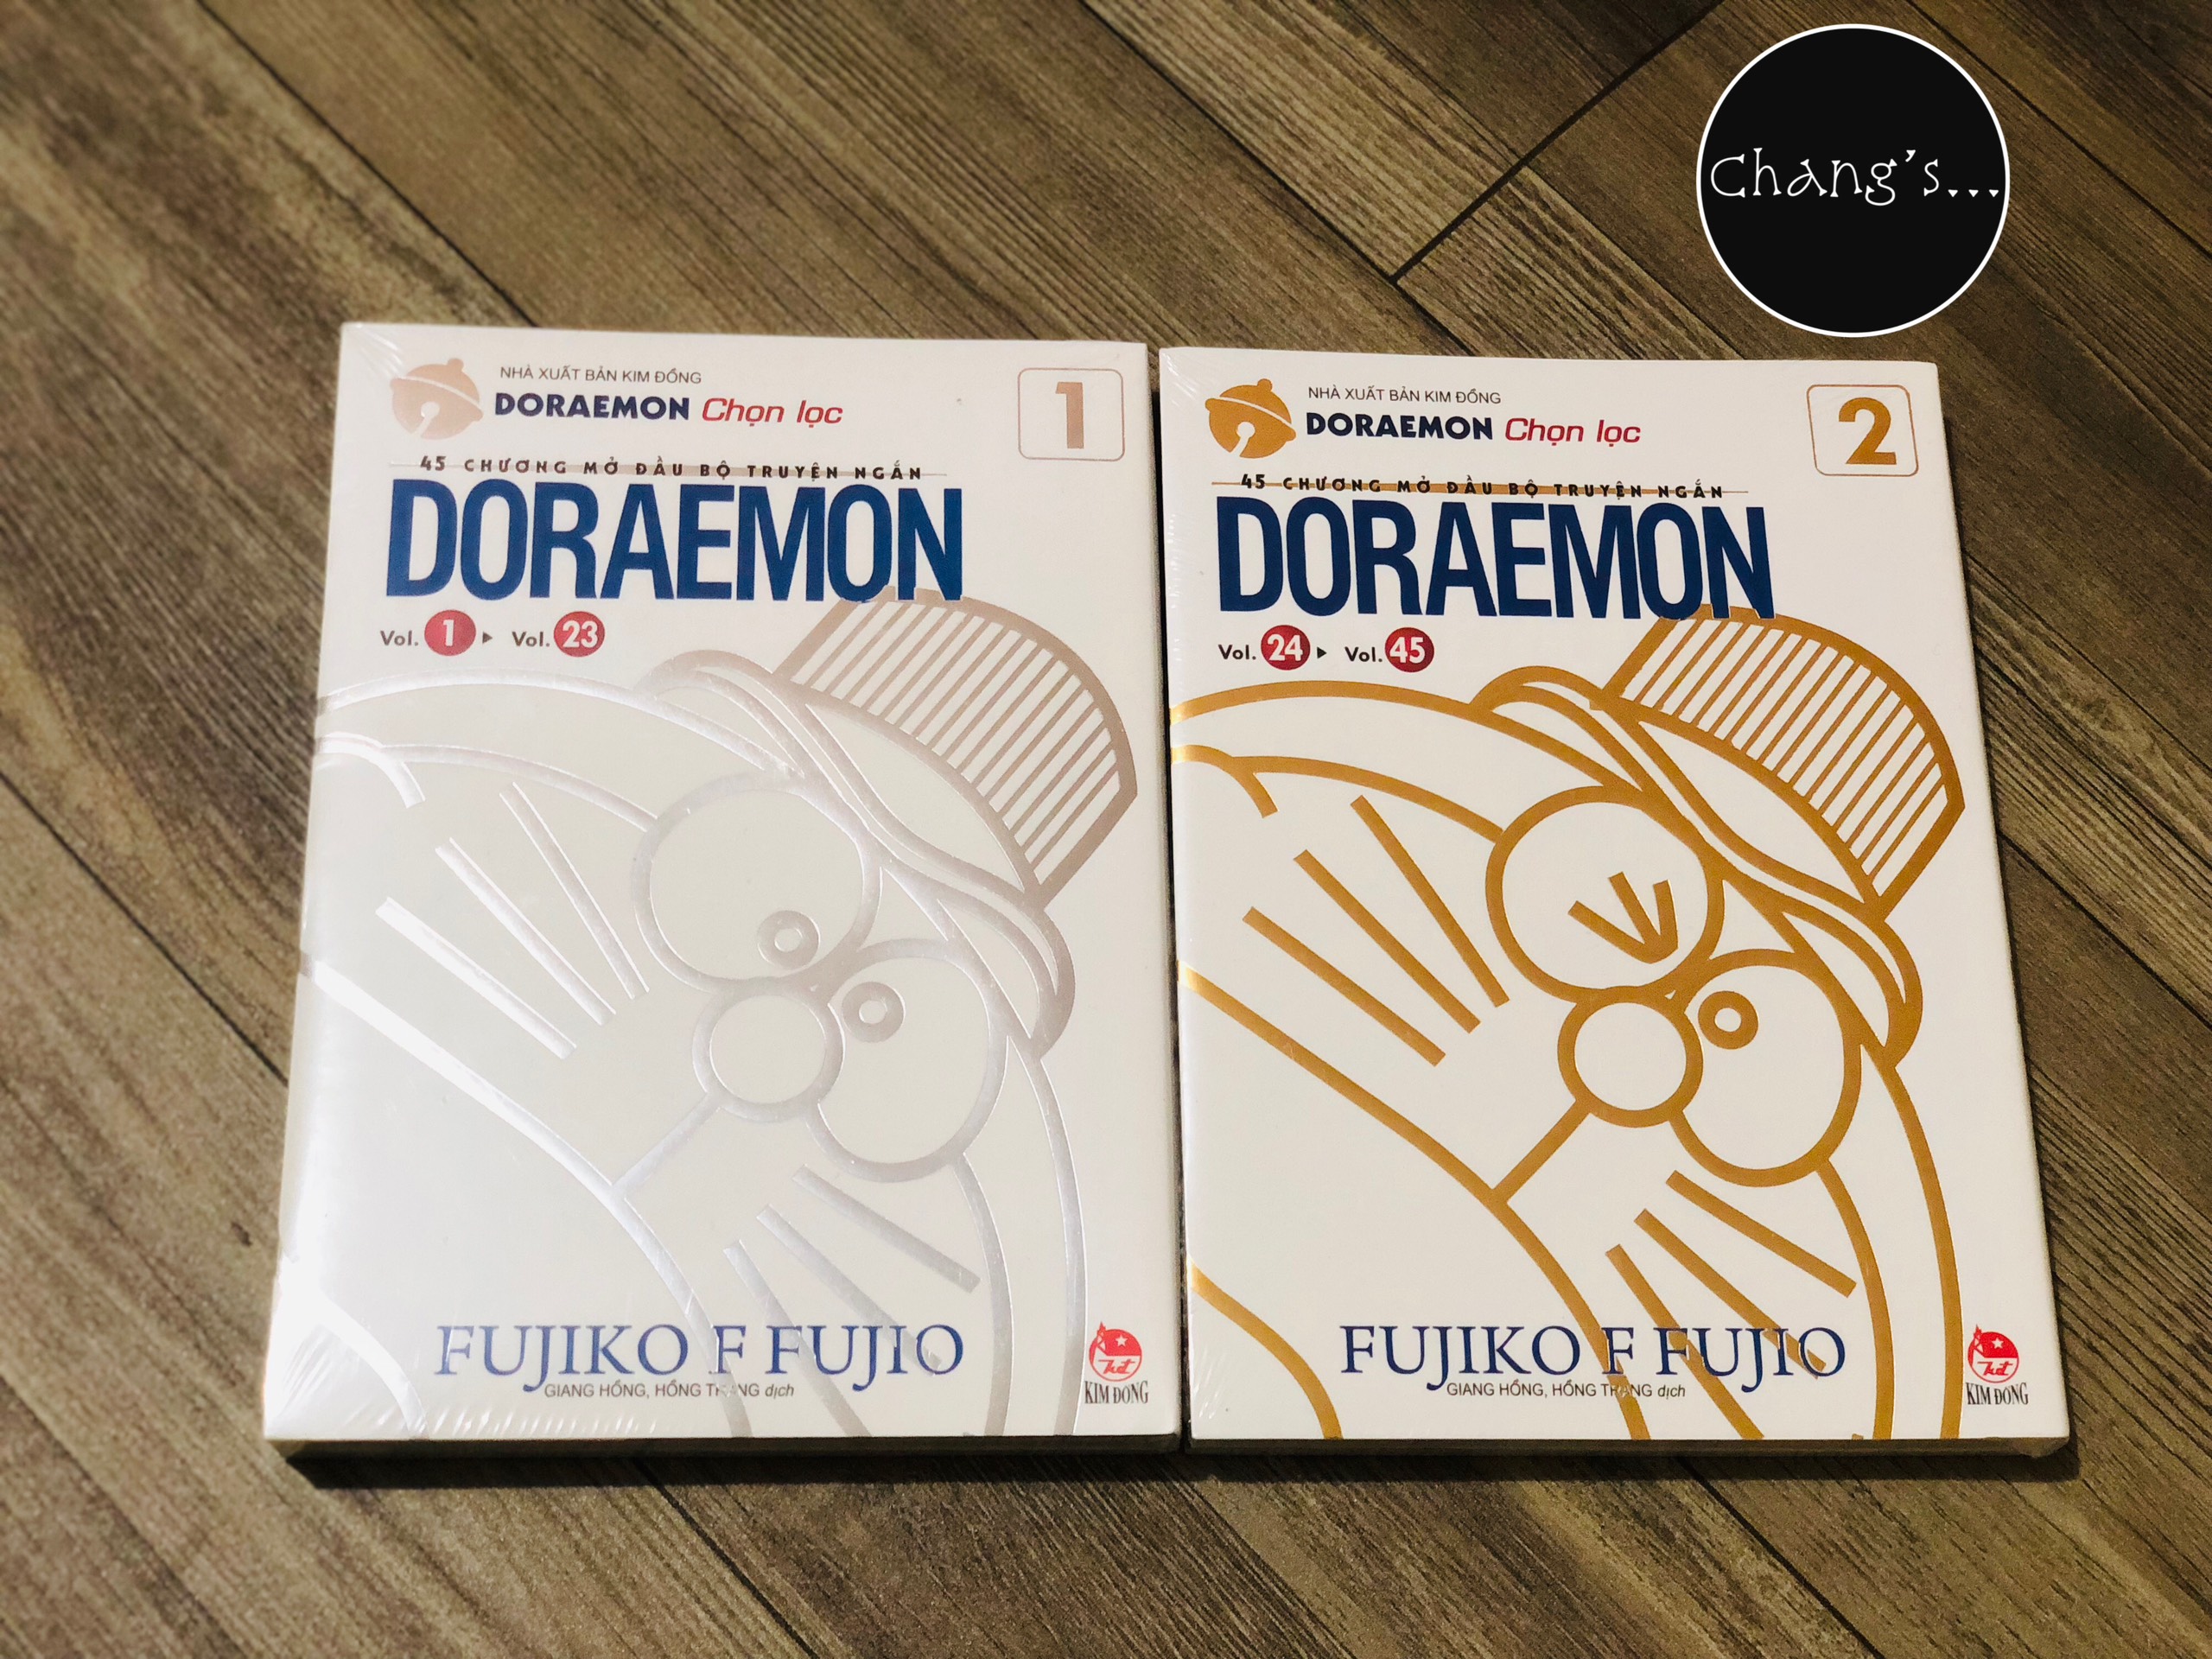 Doraemon - 45 Chương Mở Đầu Bộ Truyện Ngắn trọn bộ 2 tập